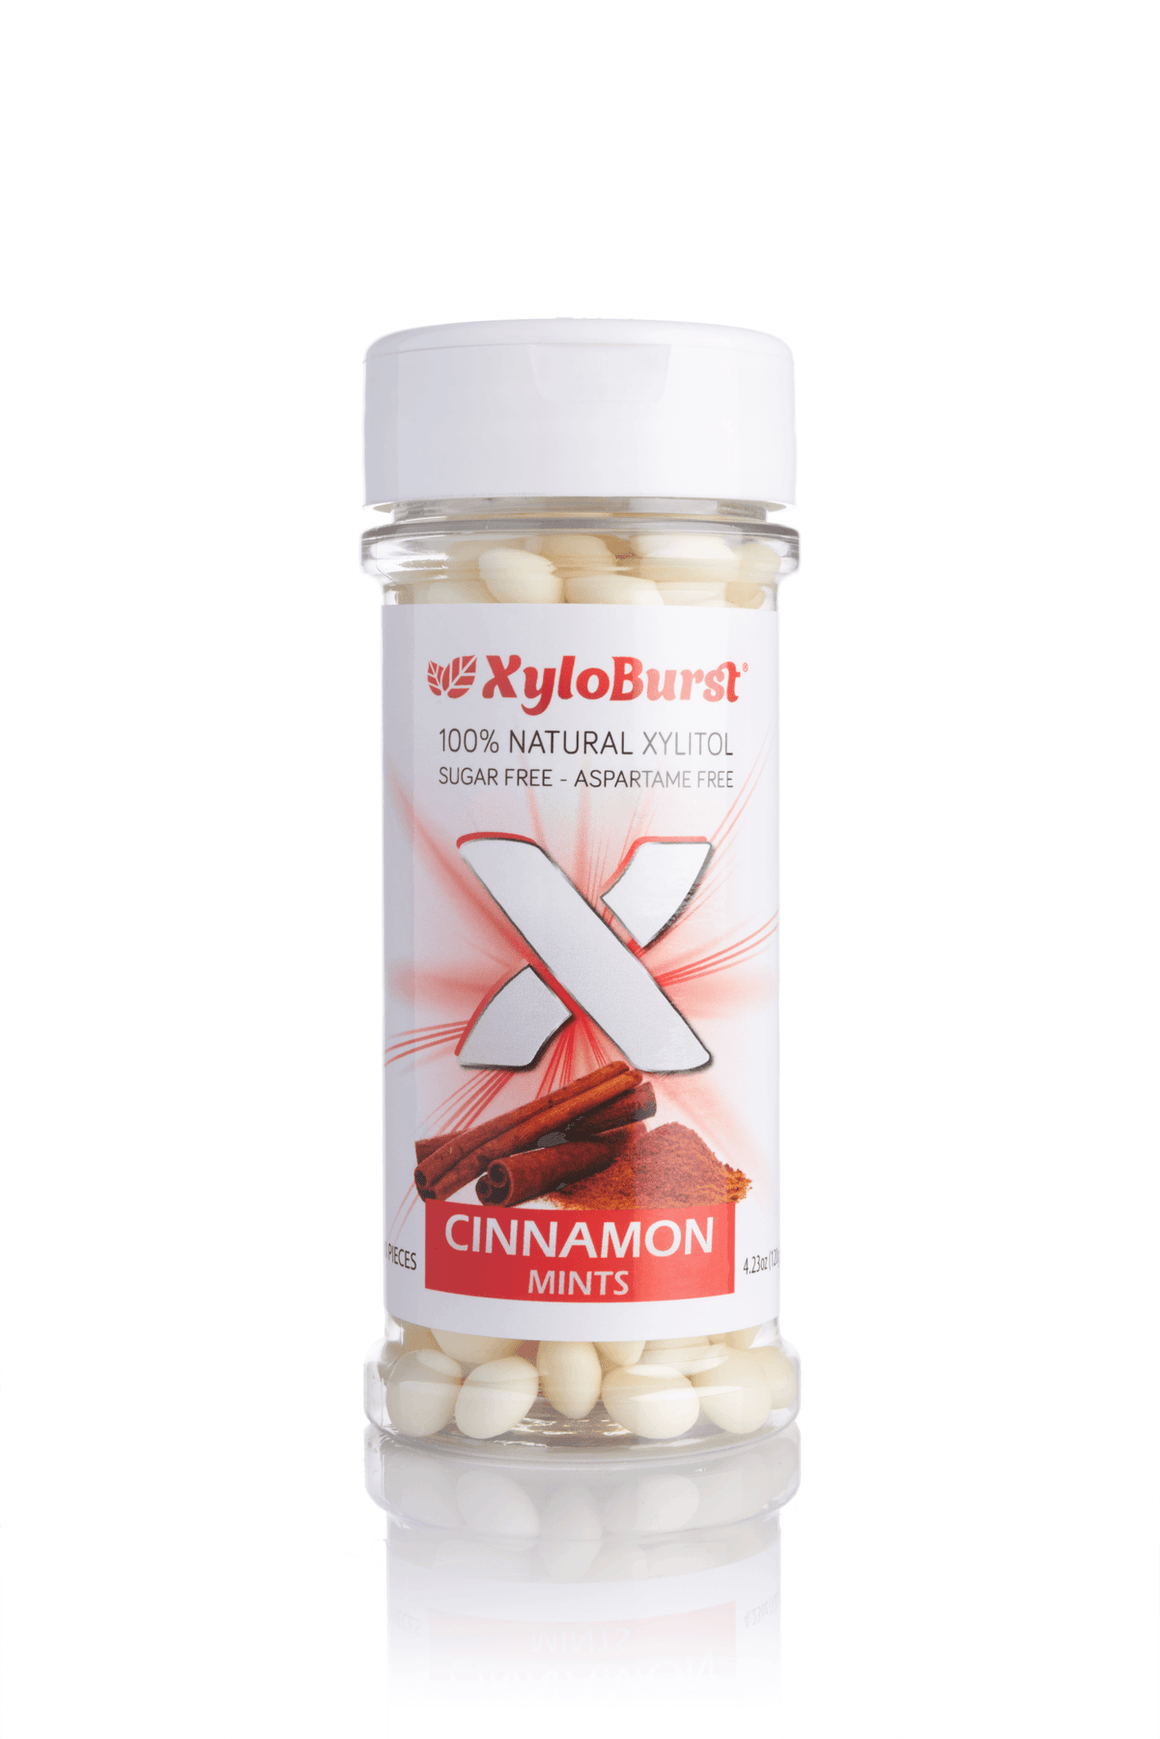 XyloBurst Cinnamon Xylitol Mints